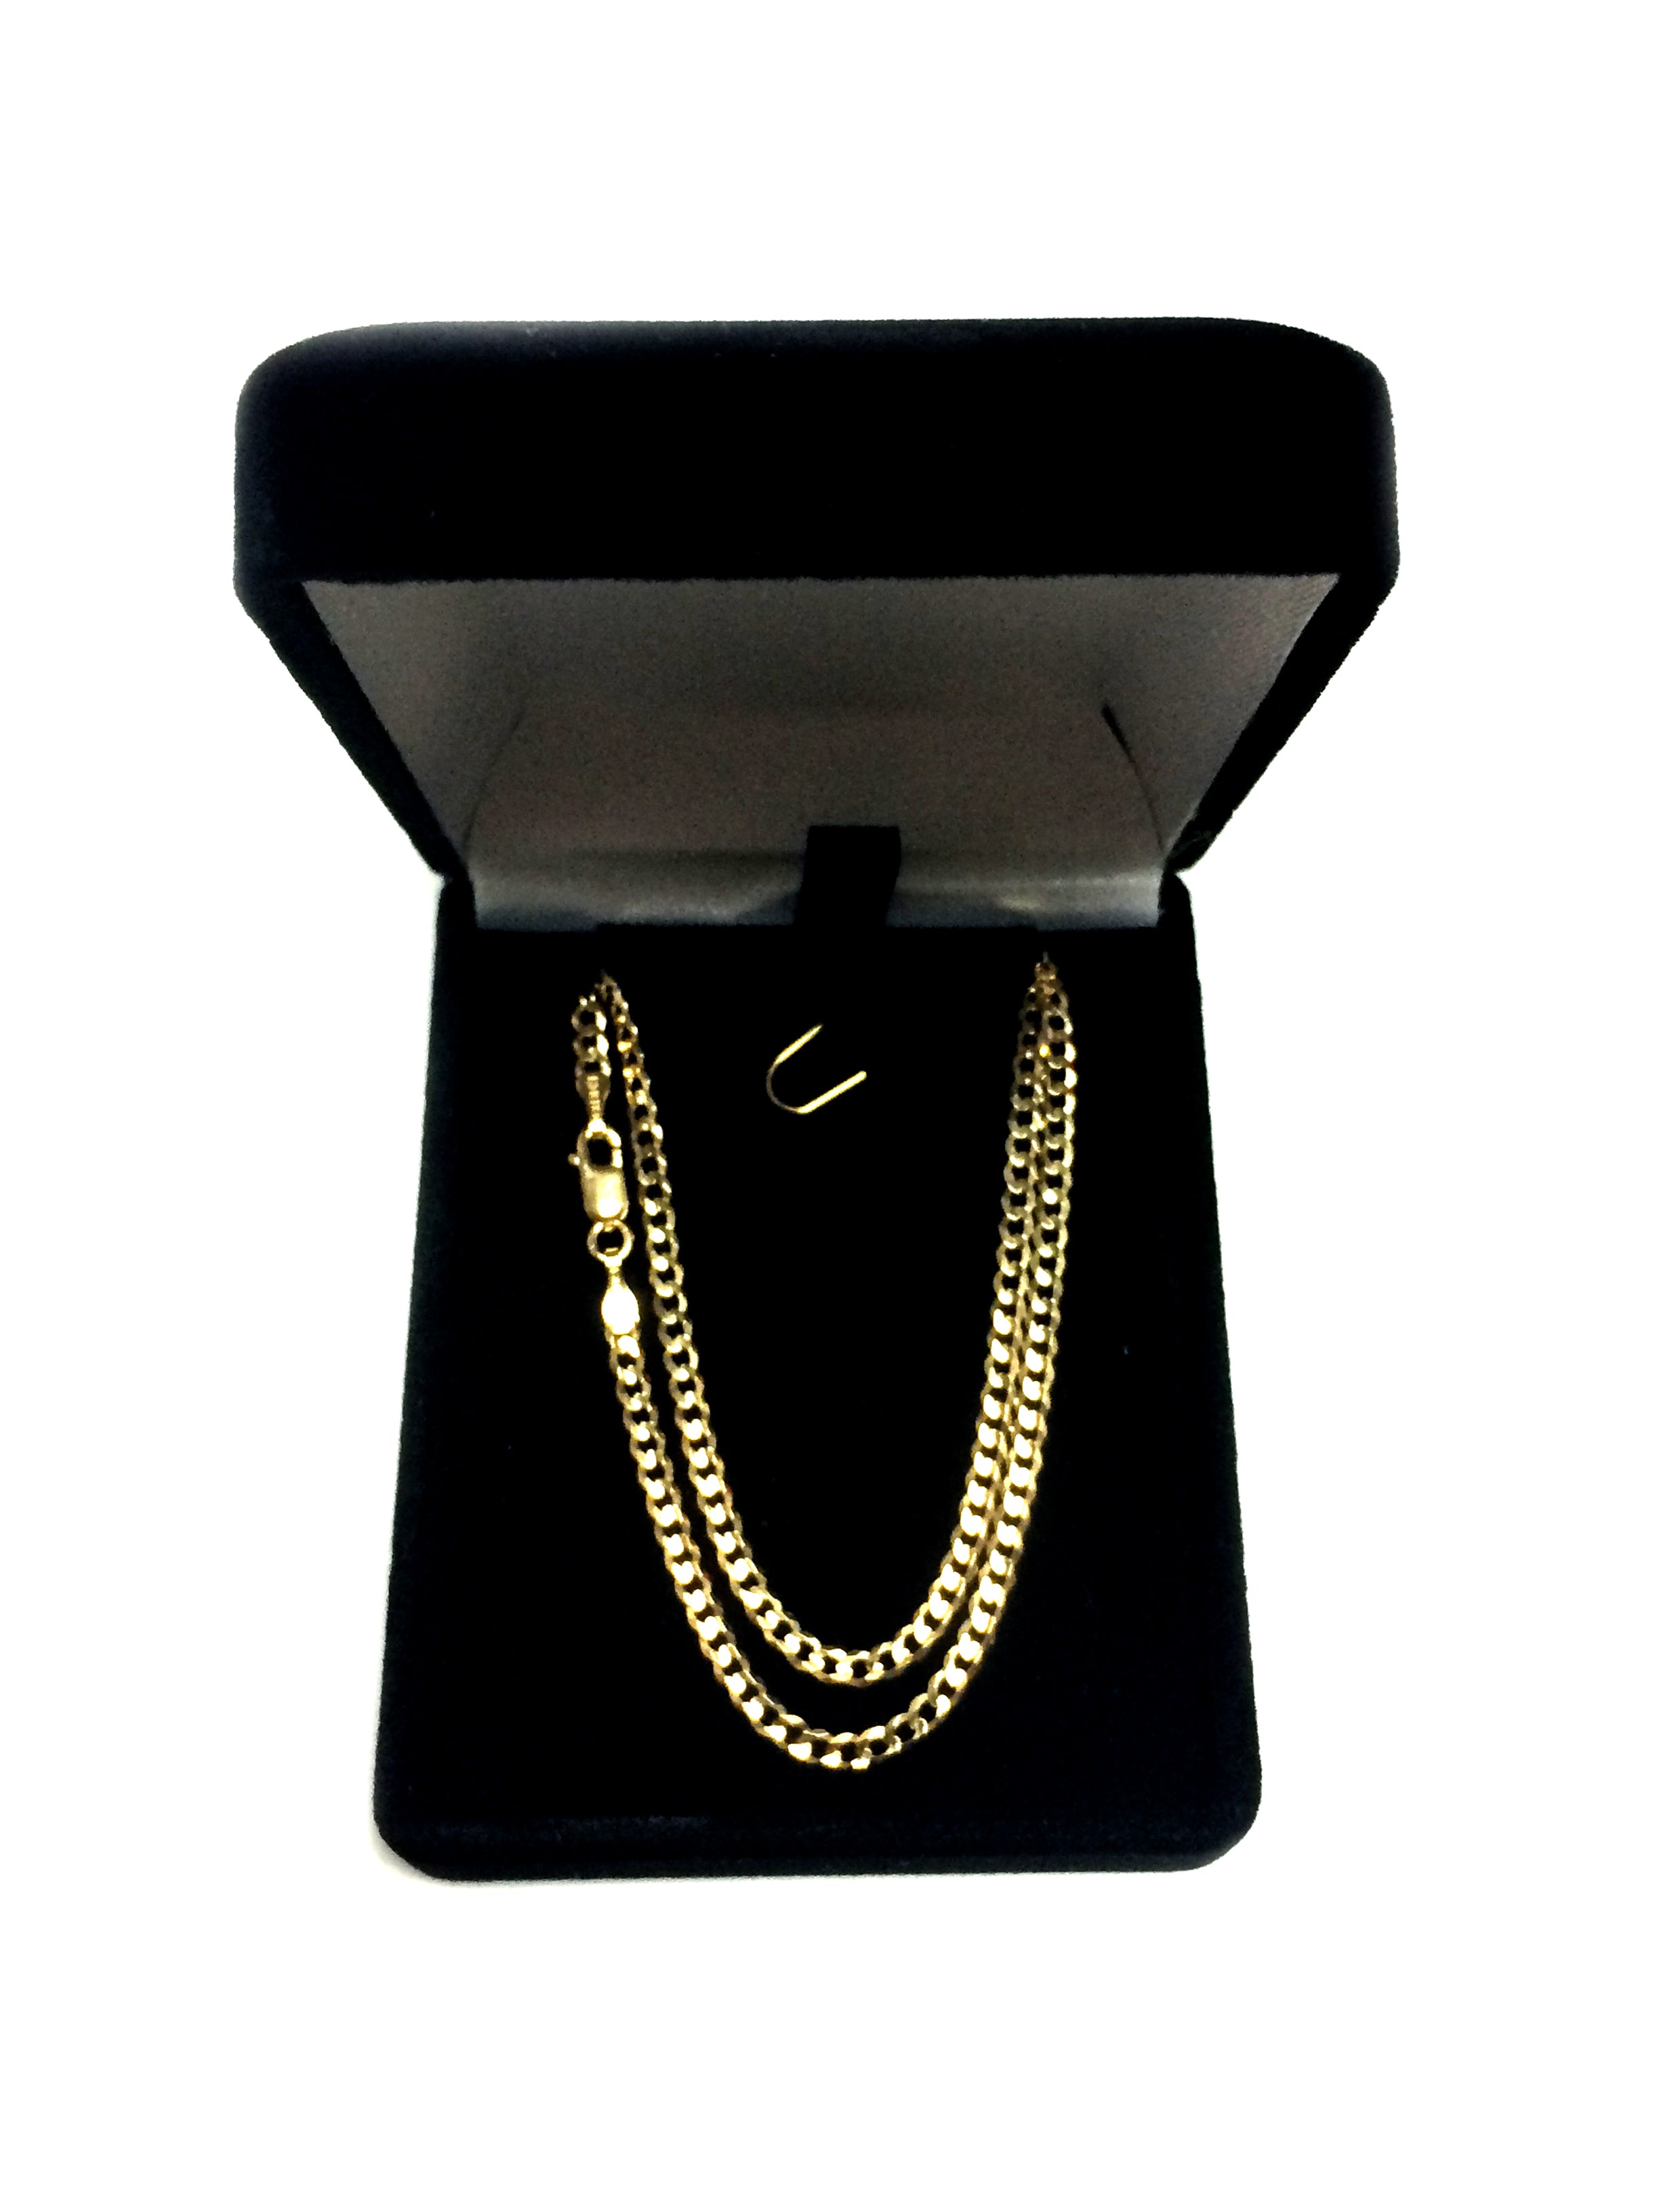 14k gult guld Comfort Curb Chain Halsband, 2,7 mm fina designersmycken för män och kvinnor